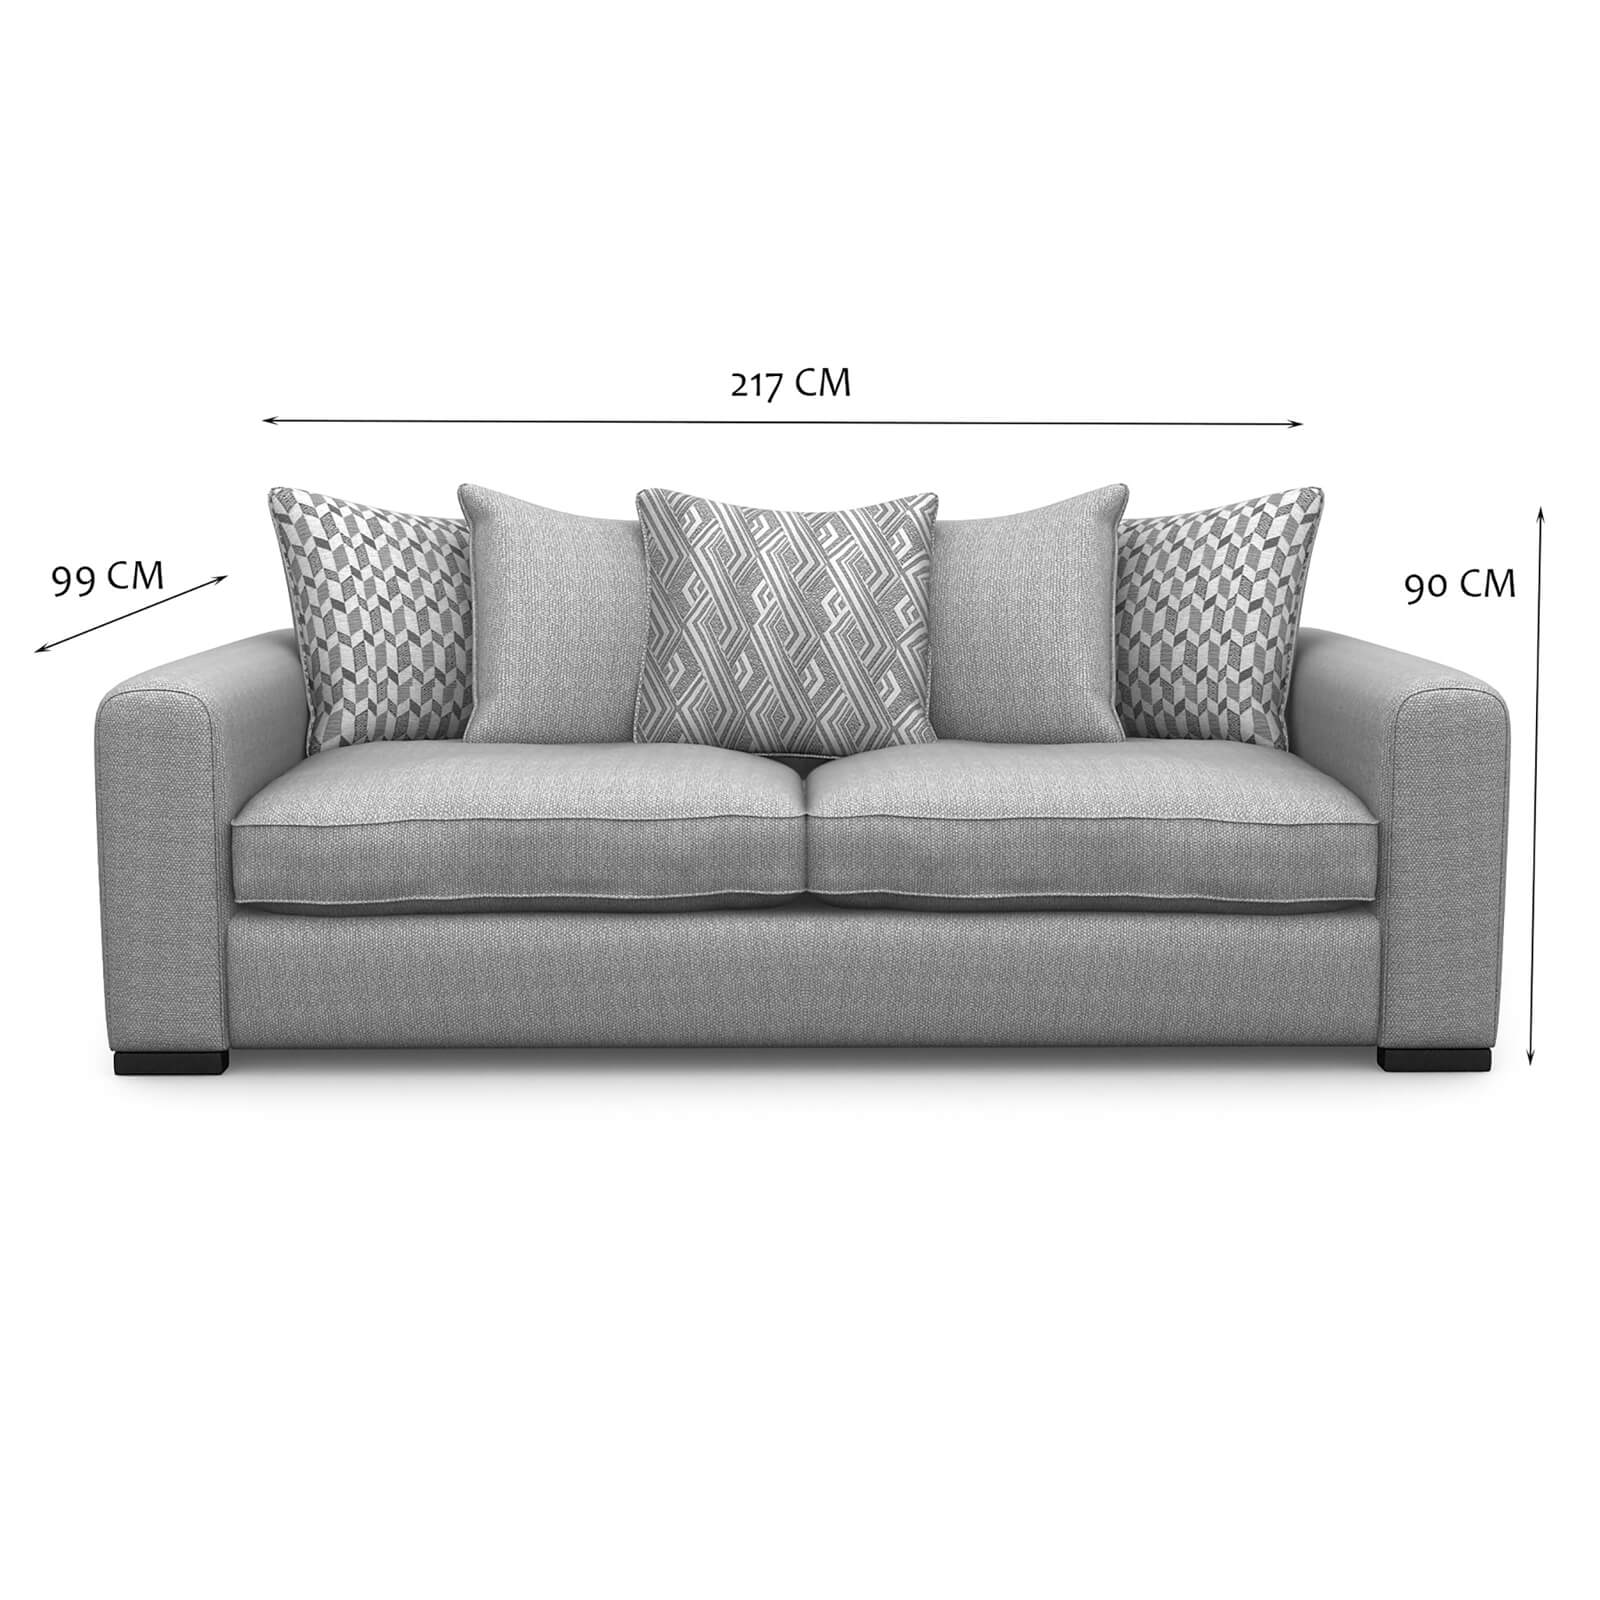 Lewis 3 Seater Sofa - Natural